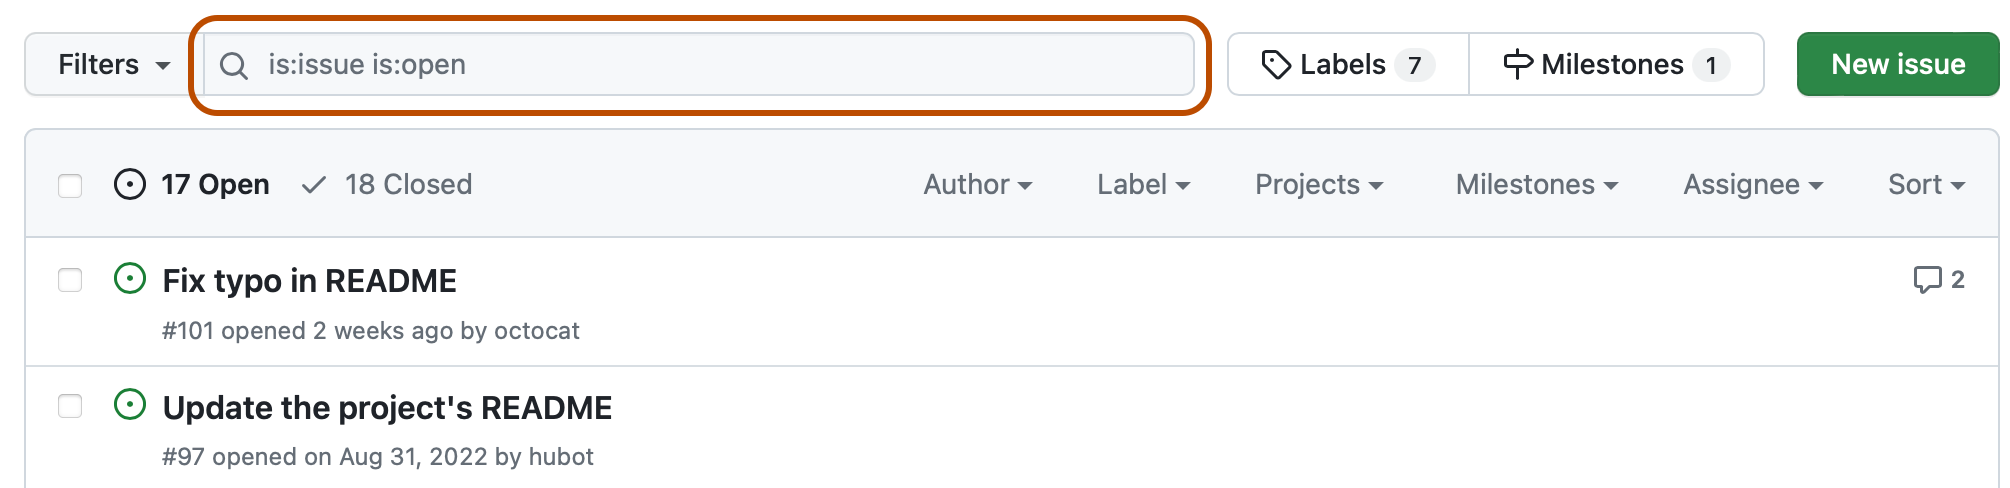 Capture d’écran de la liste des problèmes d’un dépôt. Au-dessus de la liste, un champ de recherche contenant la requête « is:issue is:open » est encadré en orange foncé.